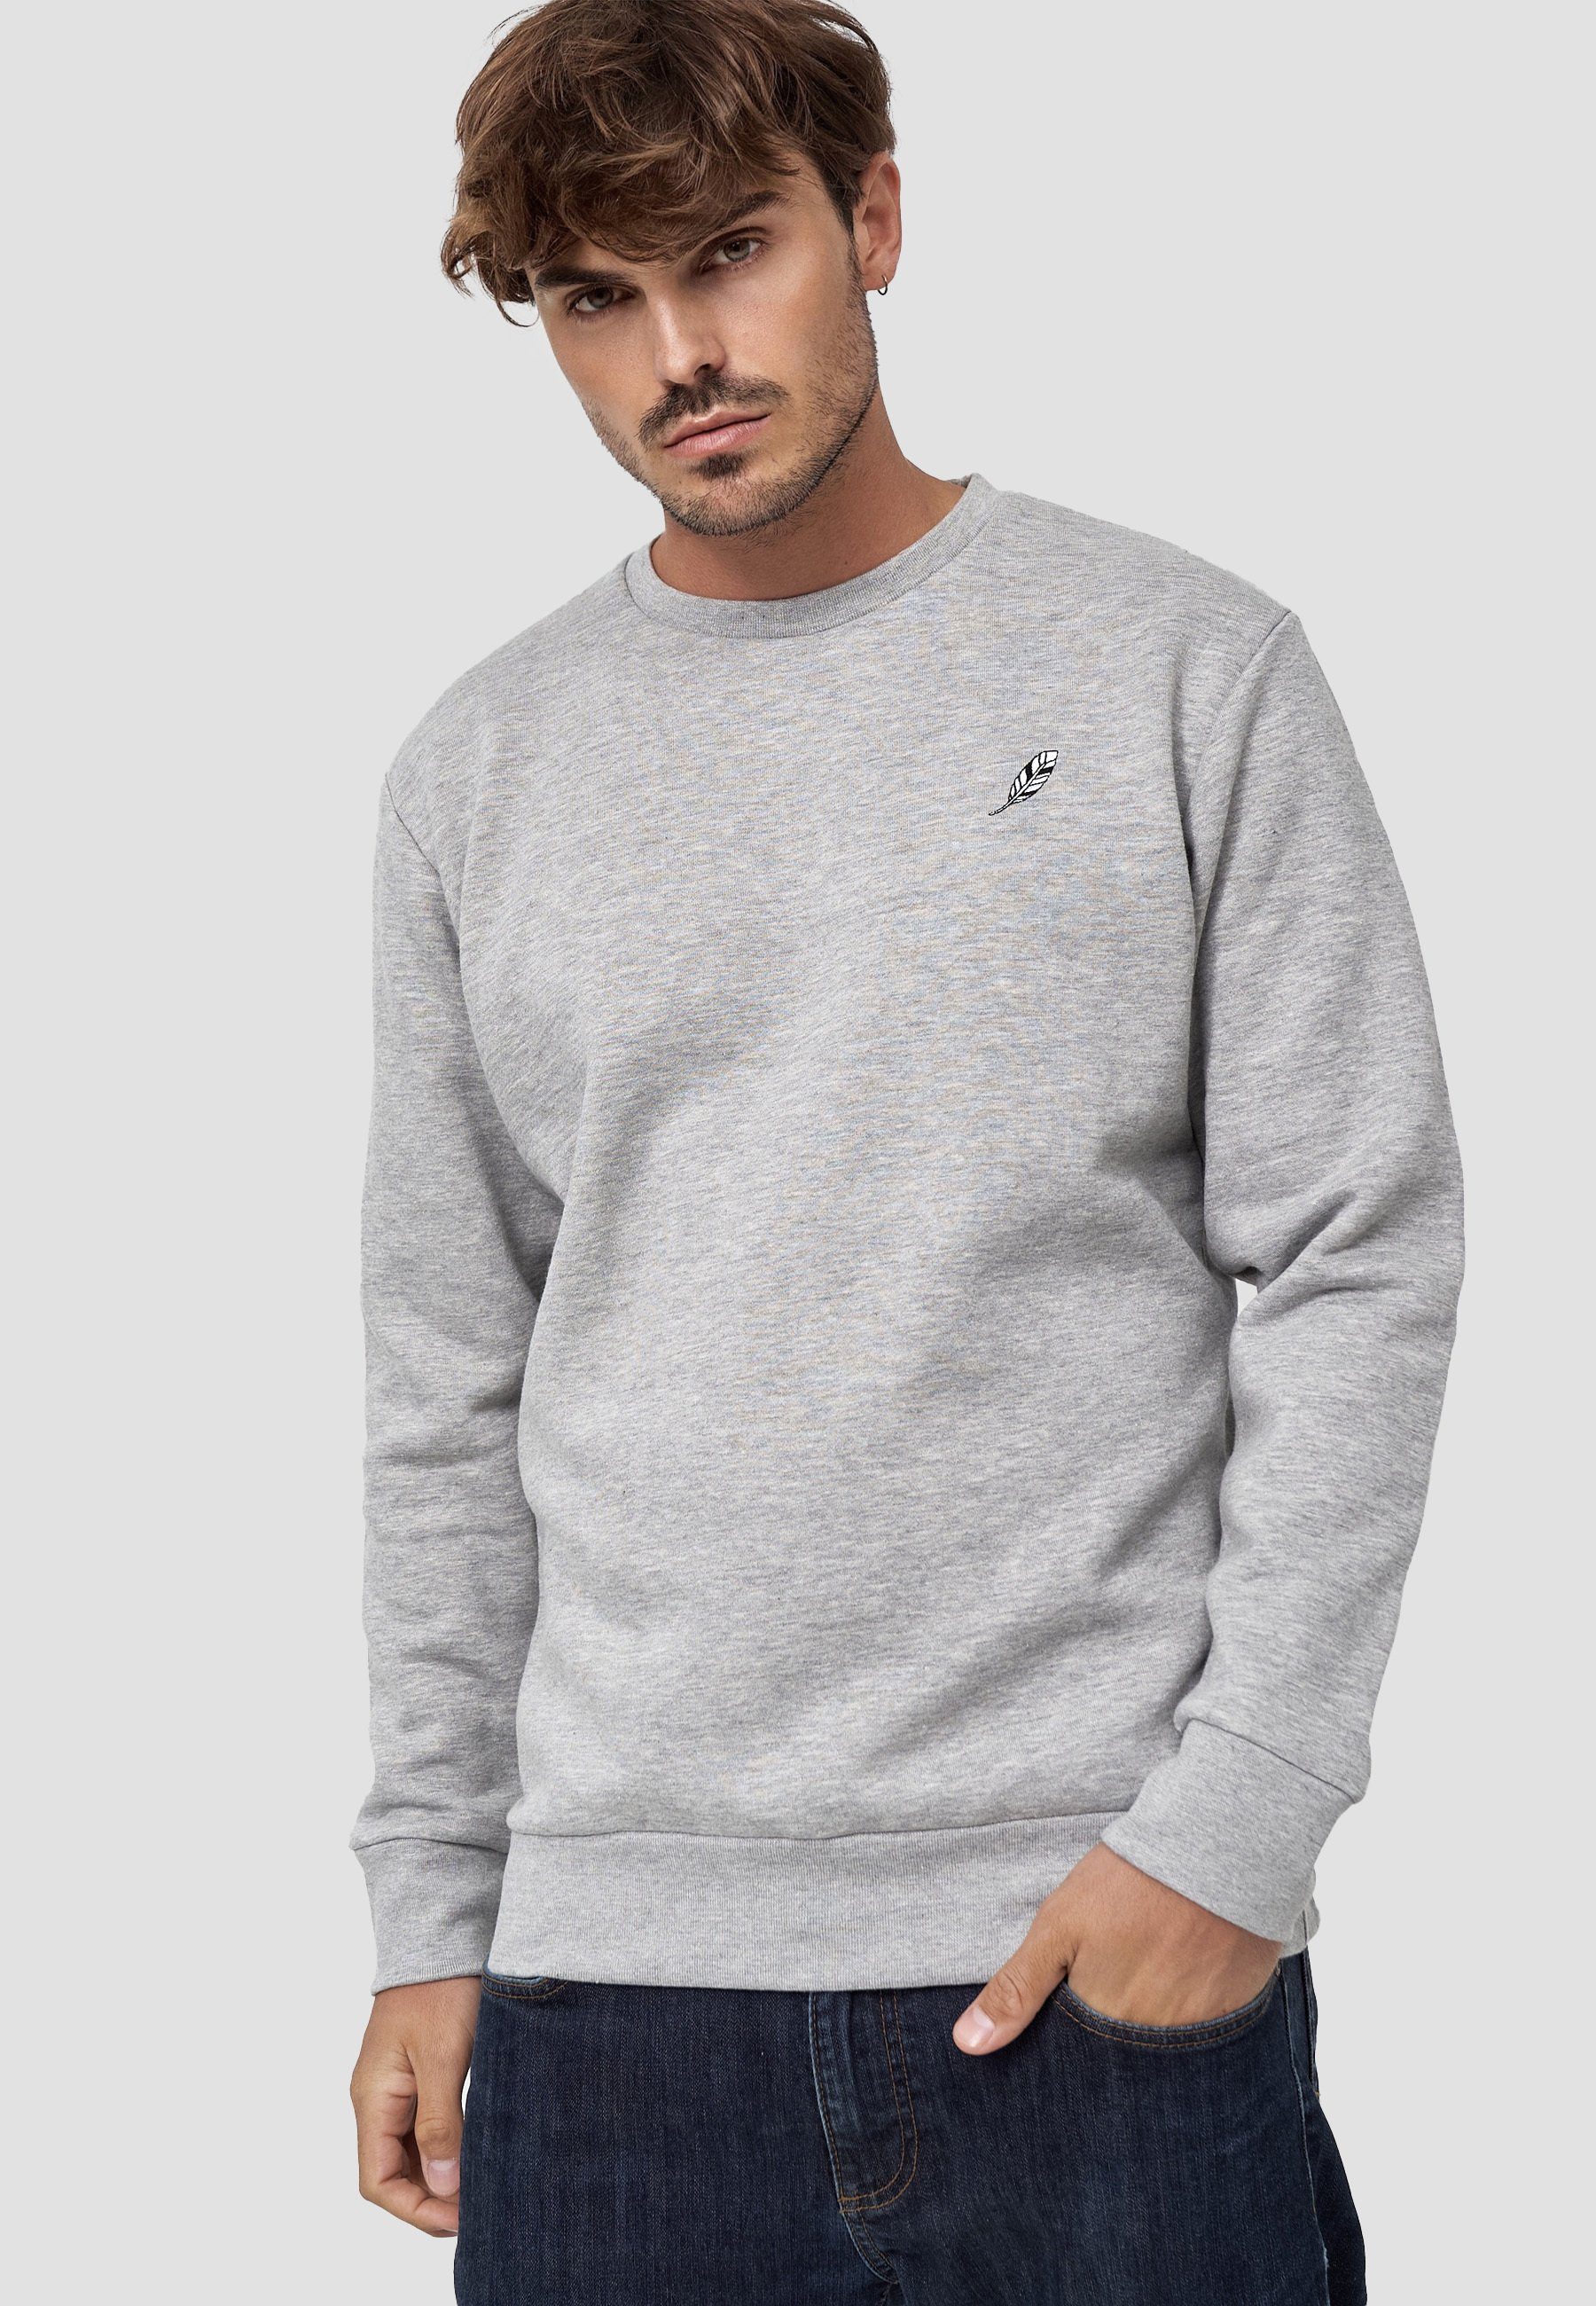 MIKON Sweatshirt Feder GOTS zertifizierte Bio-Baumwolle Grey